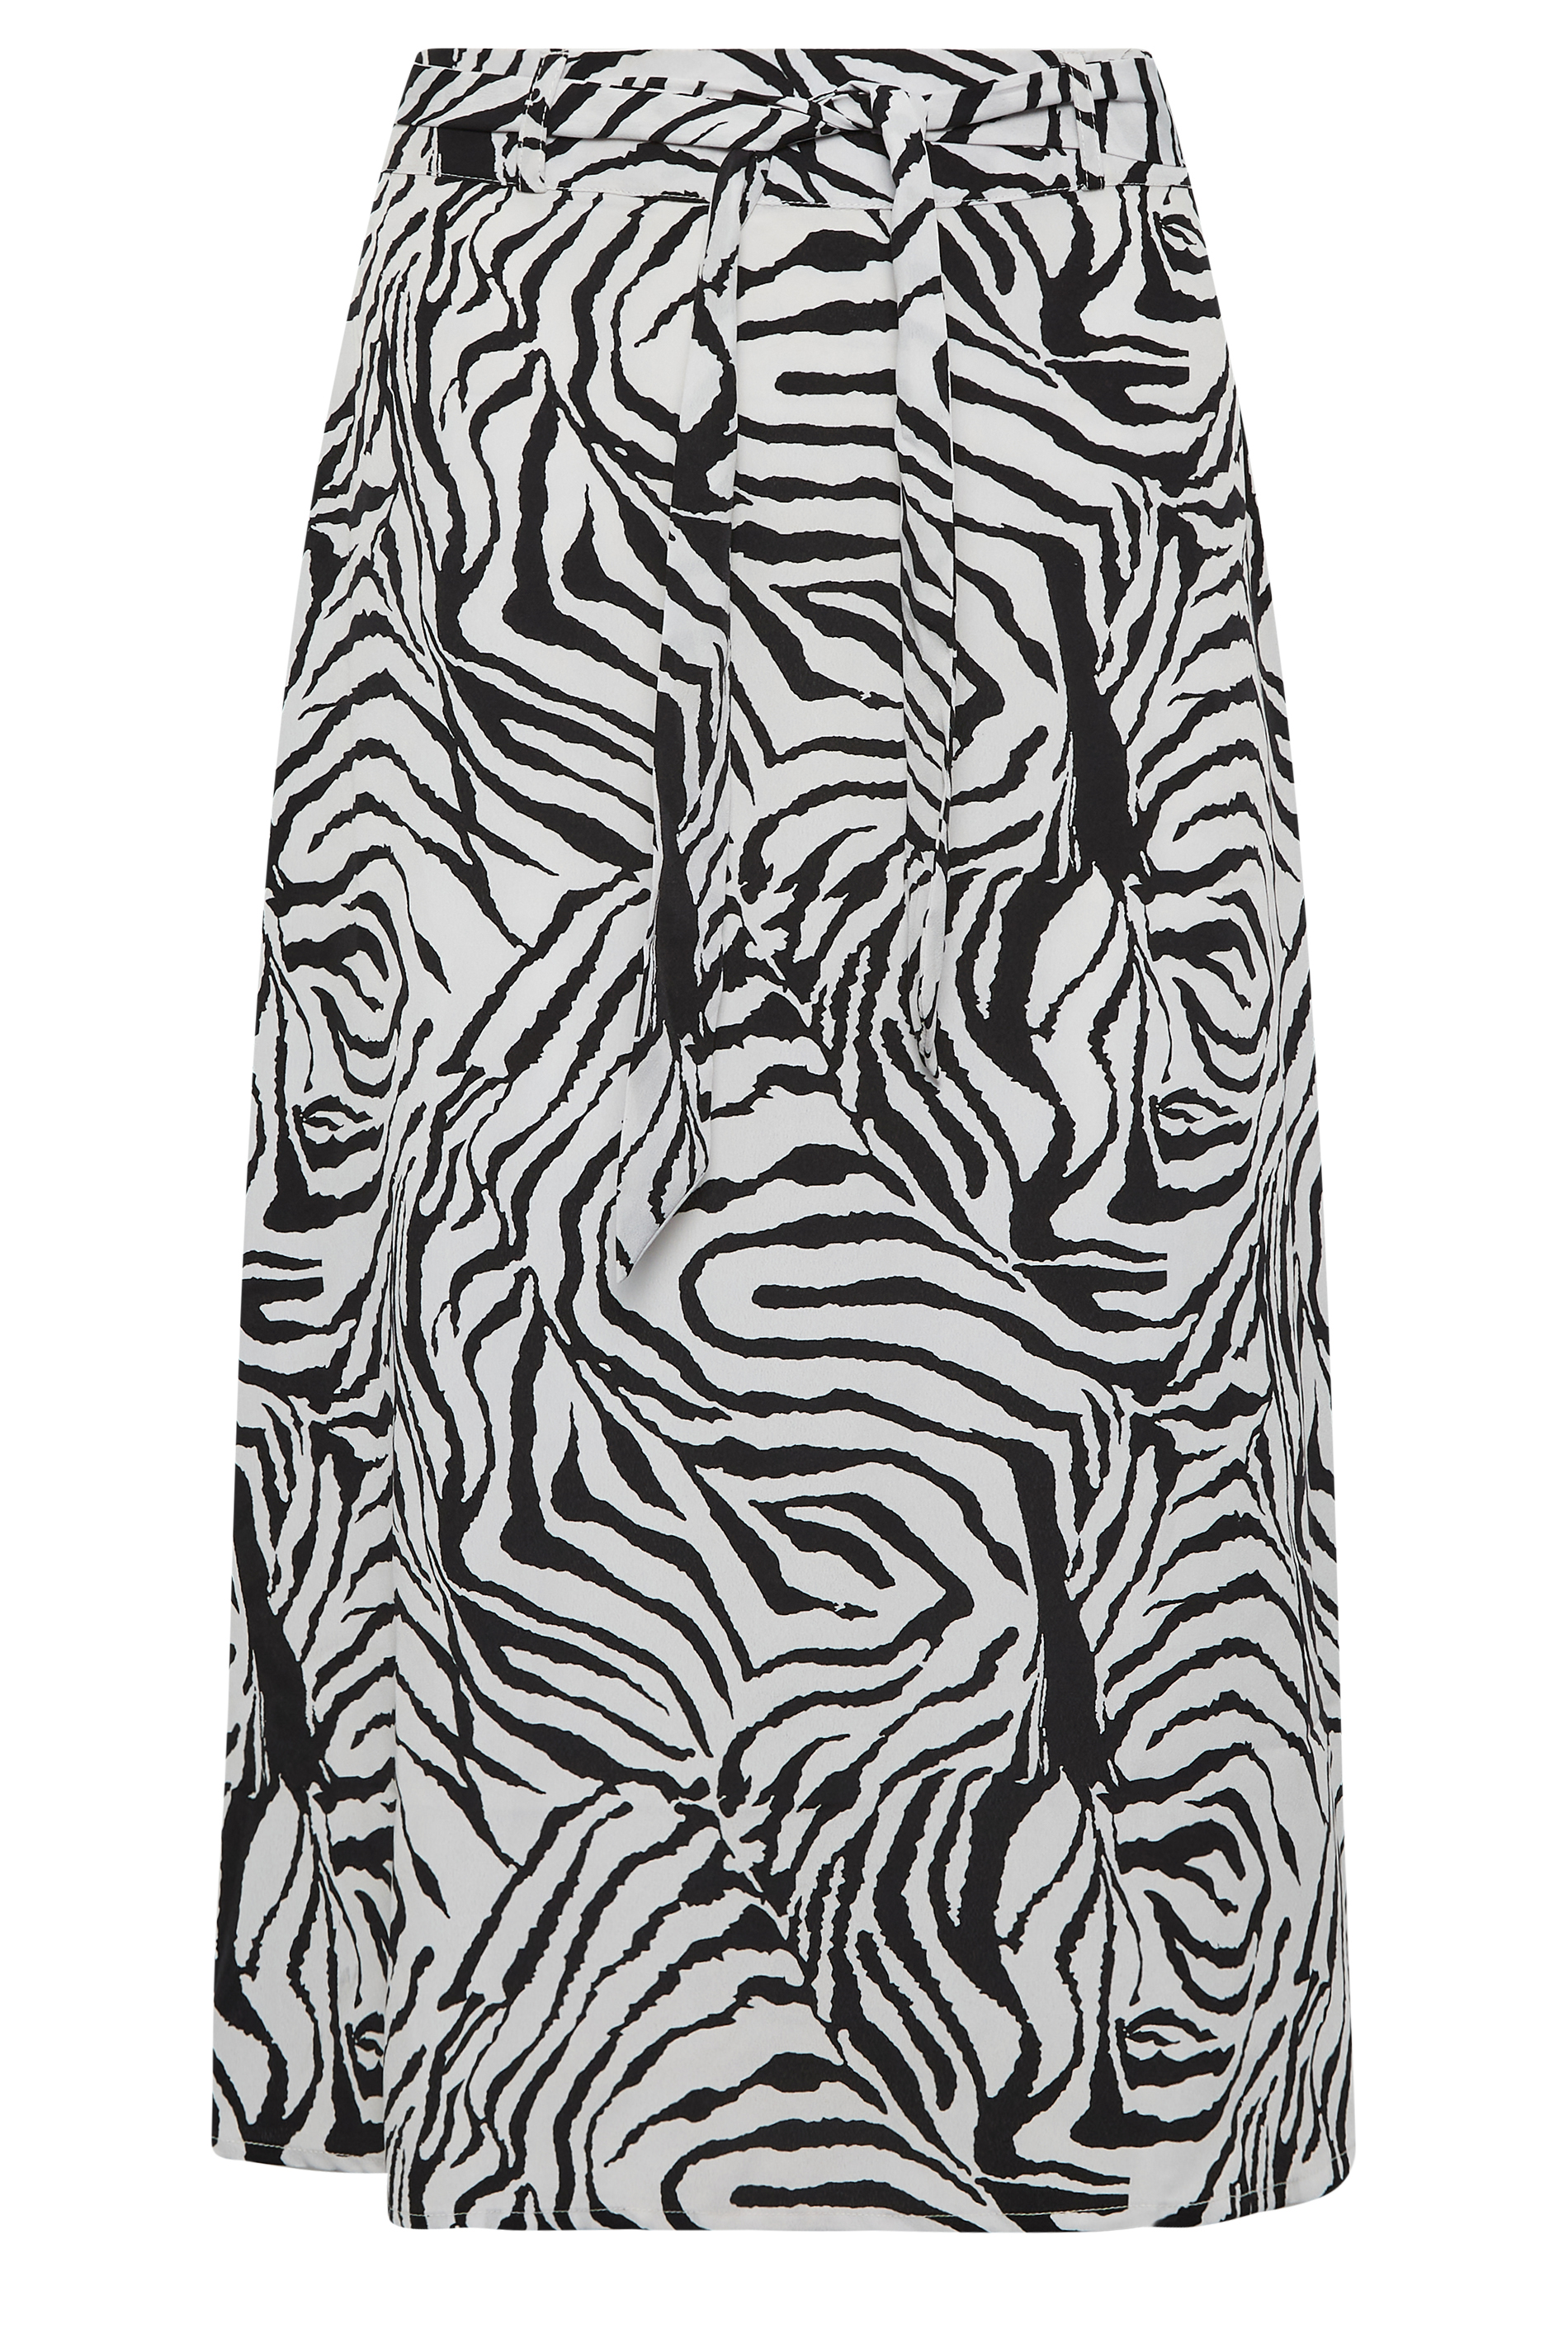 PixieGirl Black Zebra Print Belted Midi Skirt | PixeGirl | PixieGirl